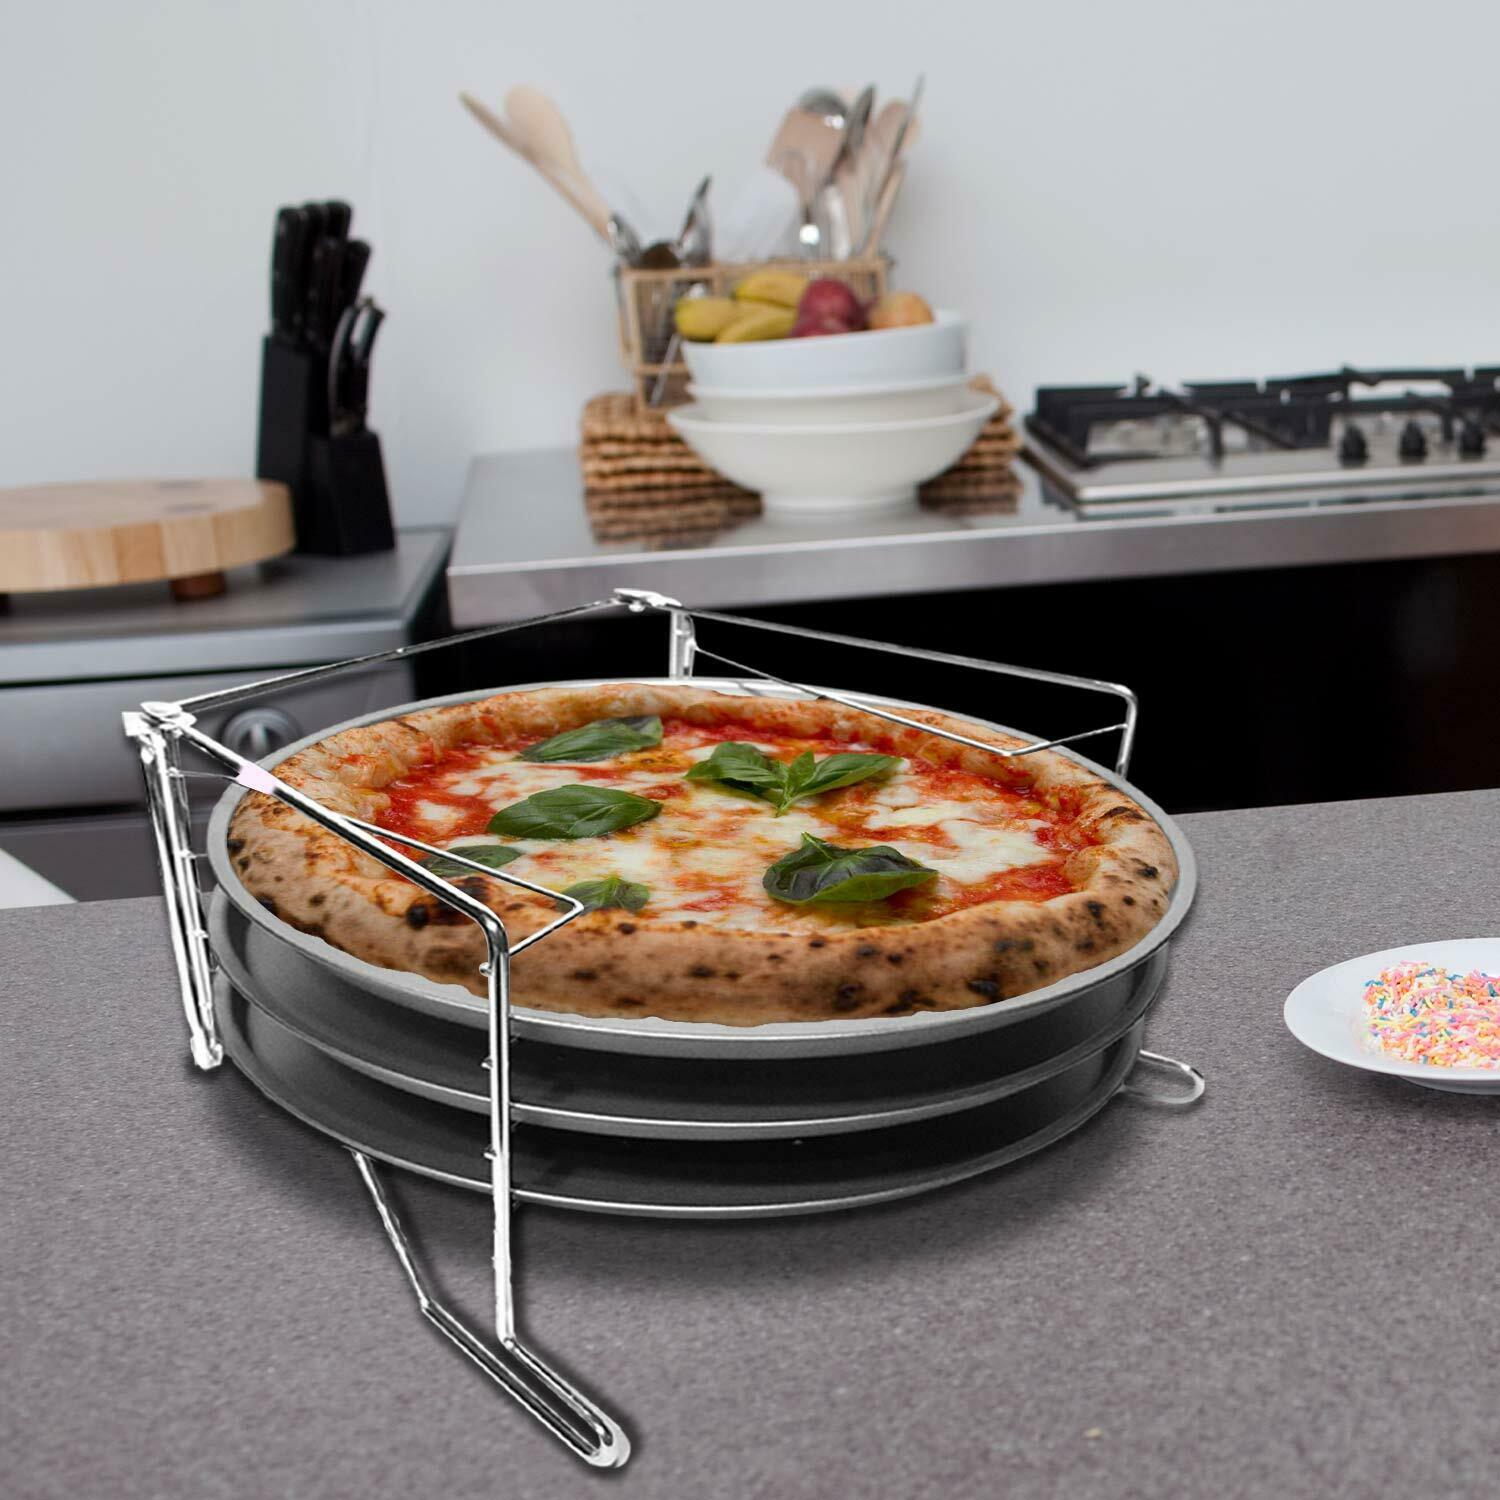 2 Confezioni Set Cottura Pizze 3 Ripiani Con 3 Teglie Pizza e Supporto Forno 29C.